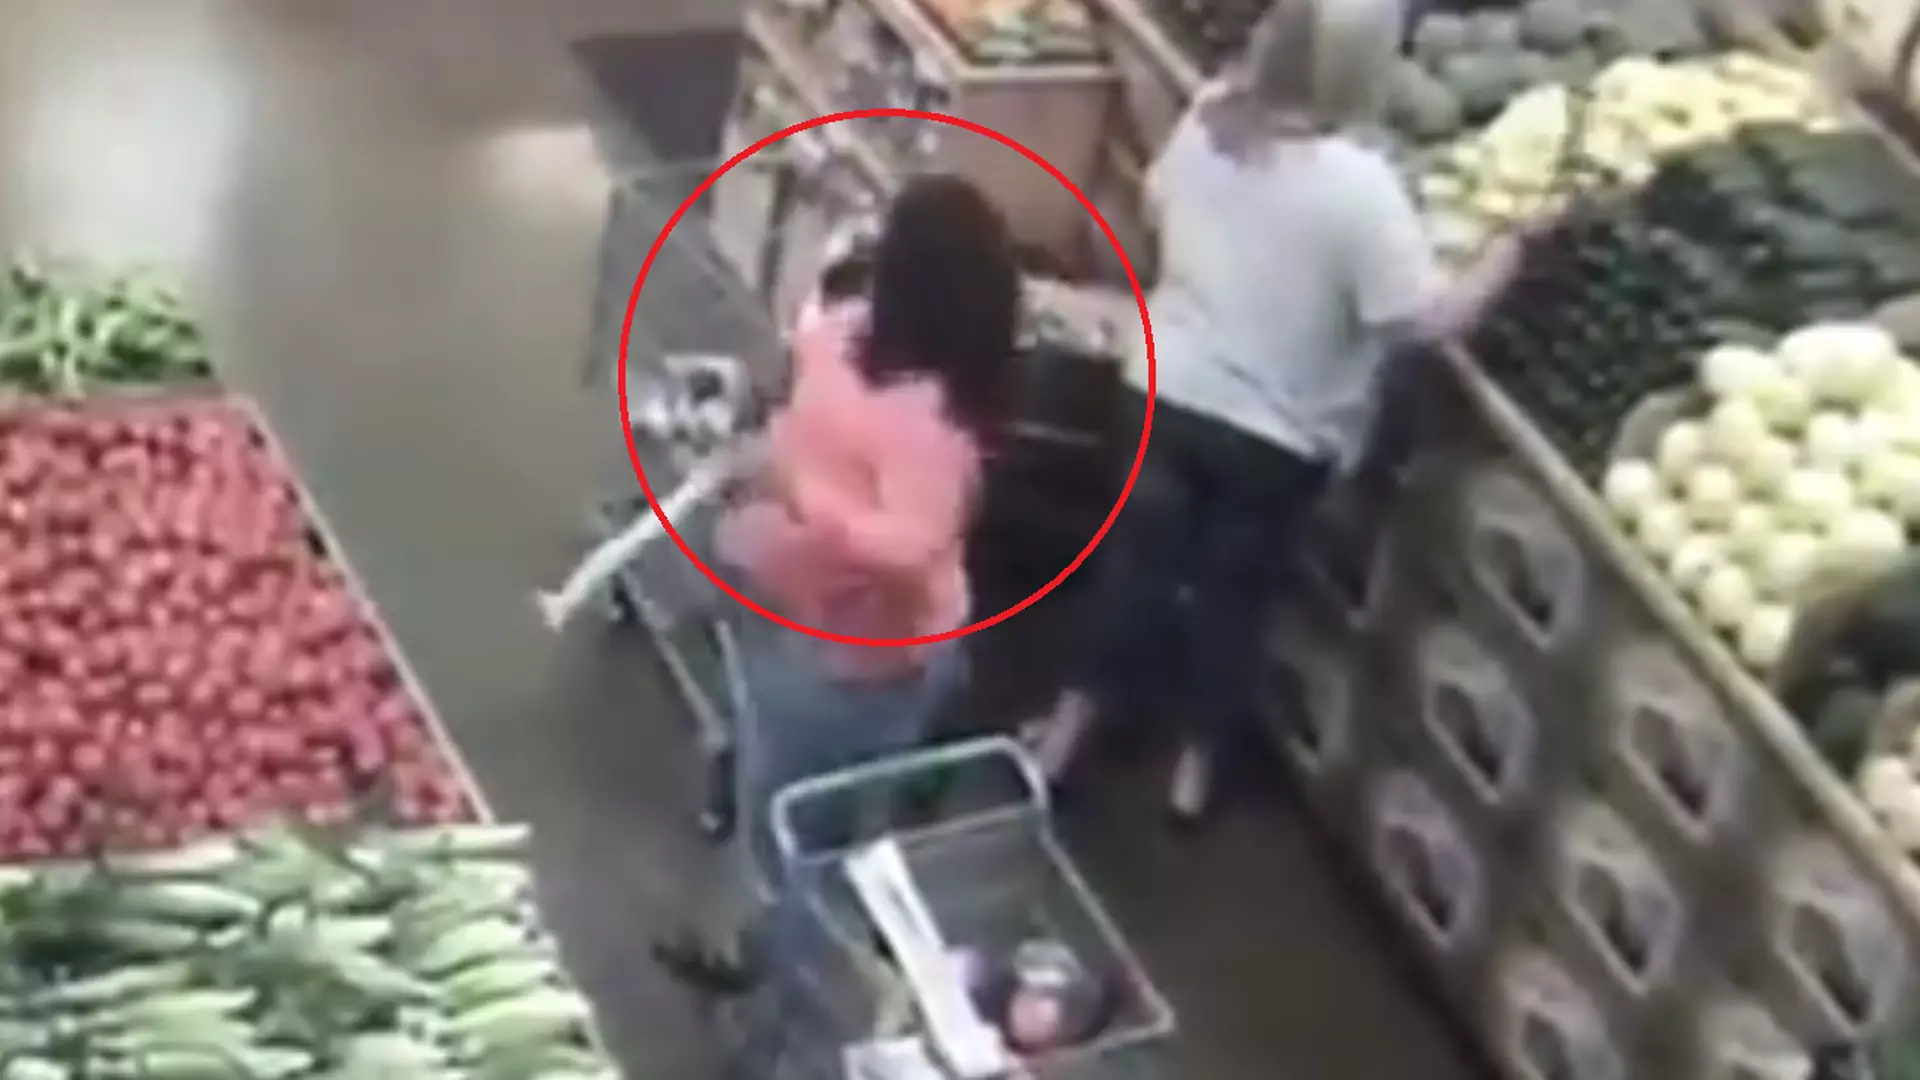 Uważaj na zakupach w supermarketach. Kobieta z nagrania została okradziona w 4 sekundy